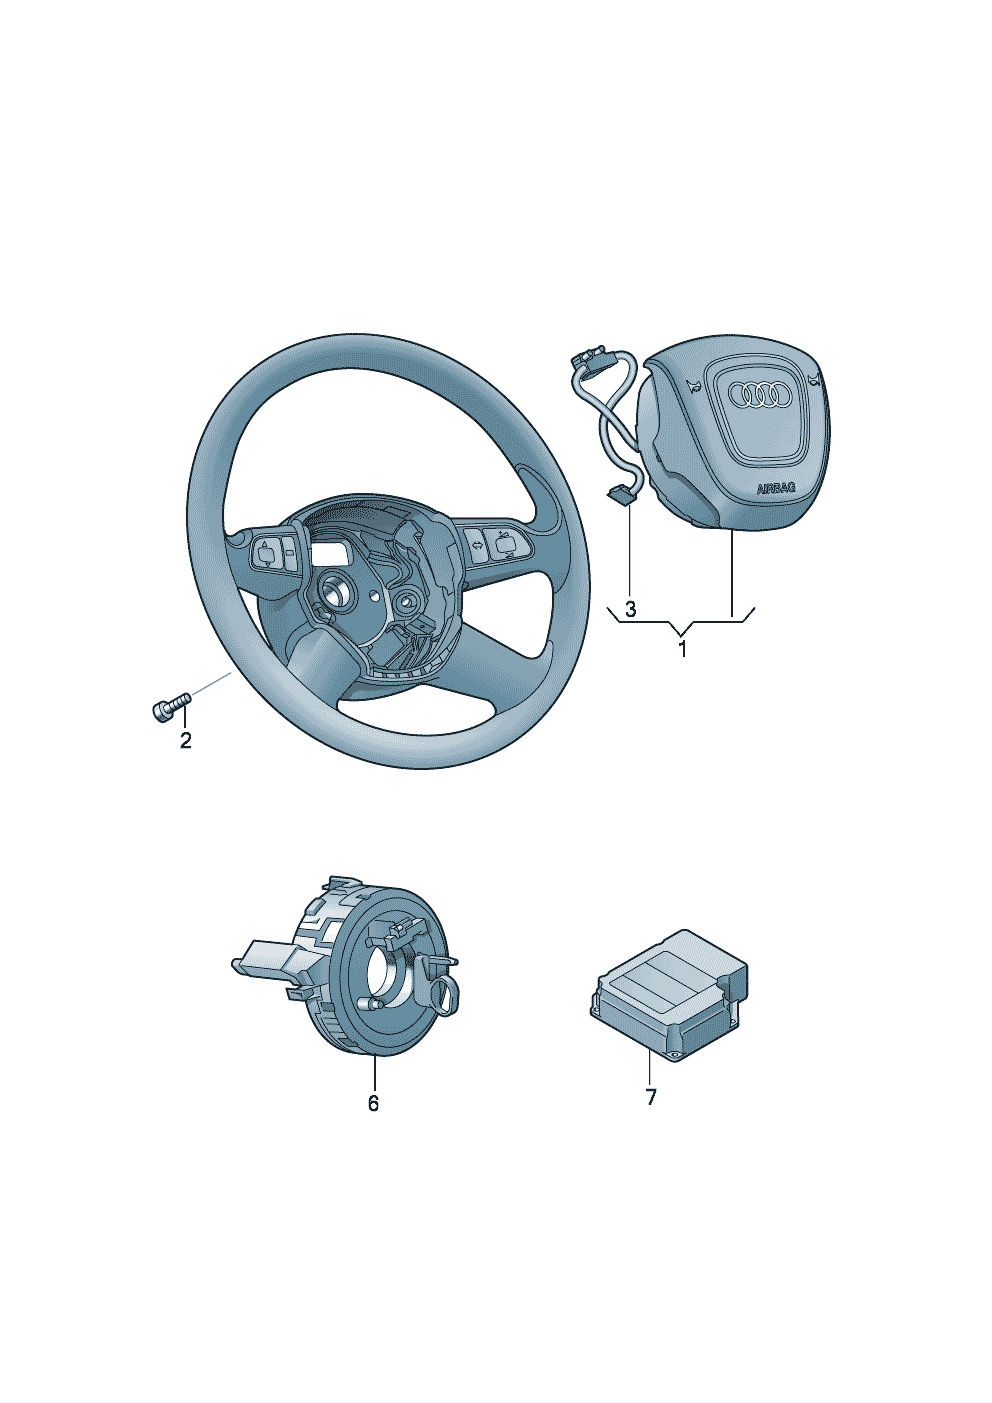 airbag unit for steering wheel<br/><br/><br/><br/><br/> Caution Hazardous <br/><br/><br/><br/><br/><br/>see workshop manual  - Audi R8/Spyder - r8